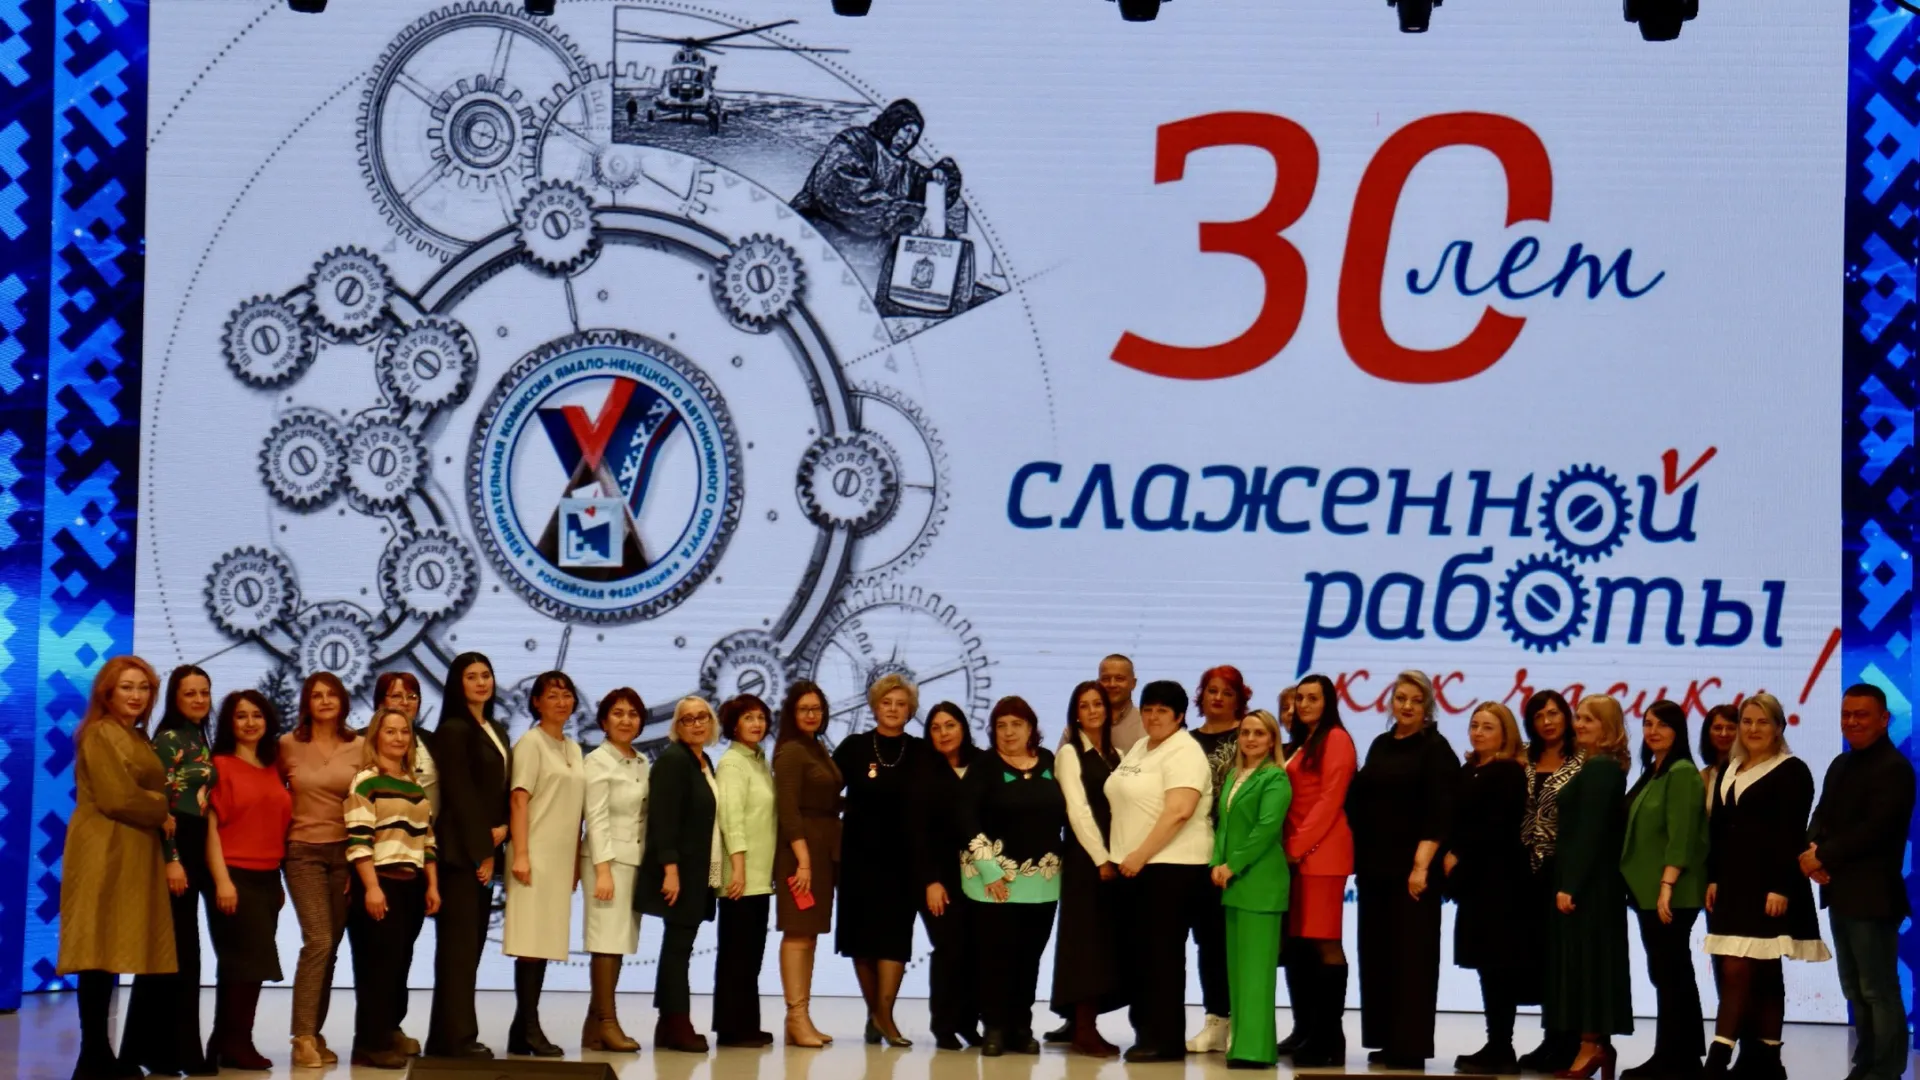 Ямальской избирательной системе исполнилось 30 лет. Фото: //t.me/lbt_harp